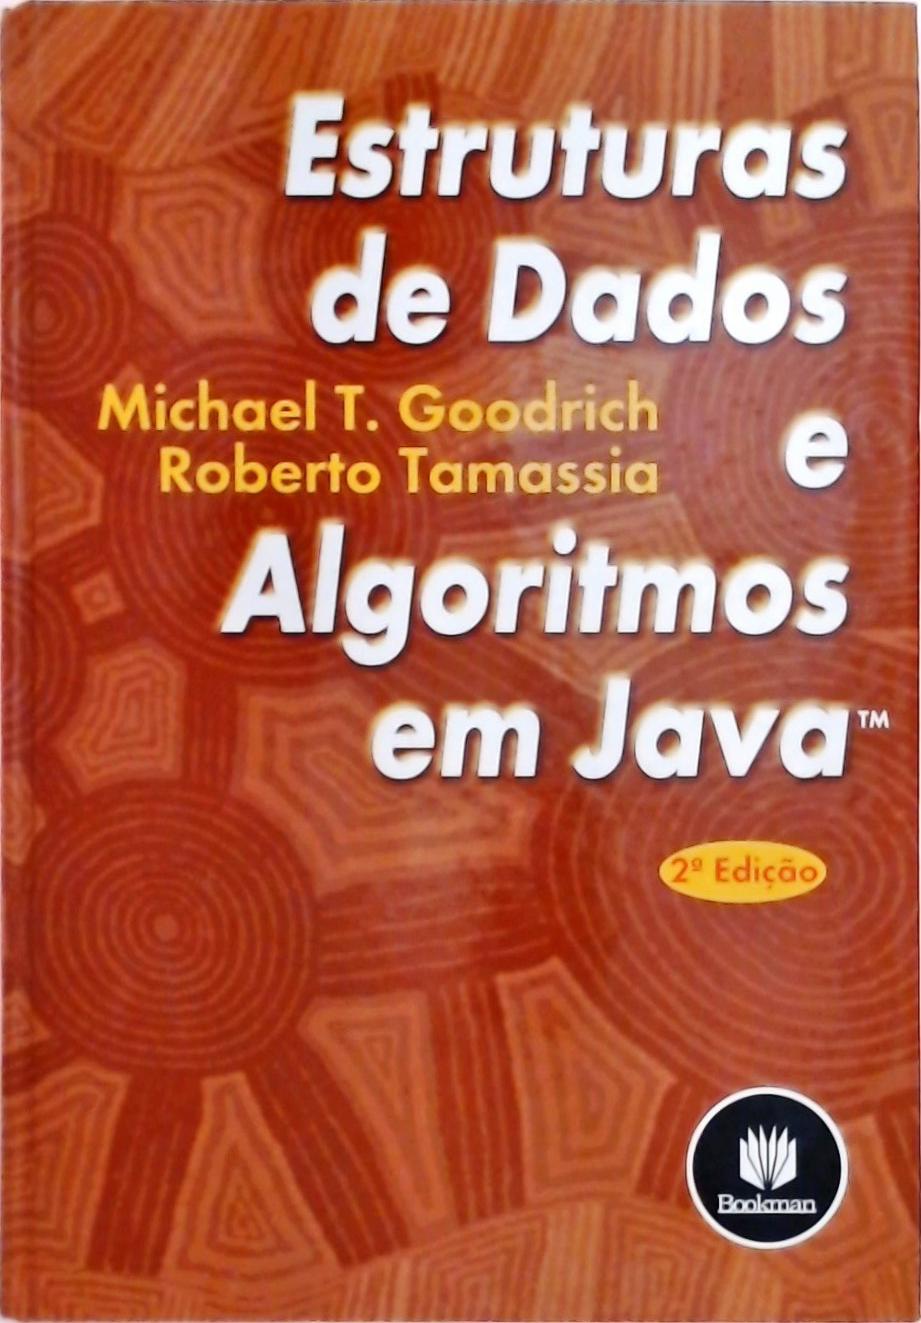 Estruturas De Dados E Algoritmos Em Java (2002)